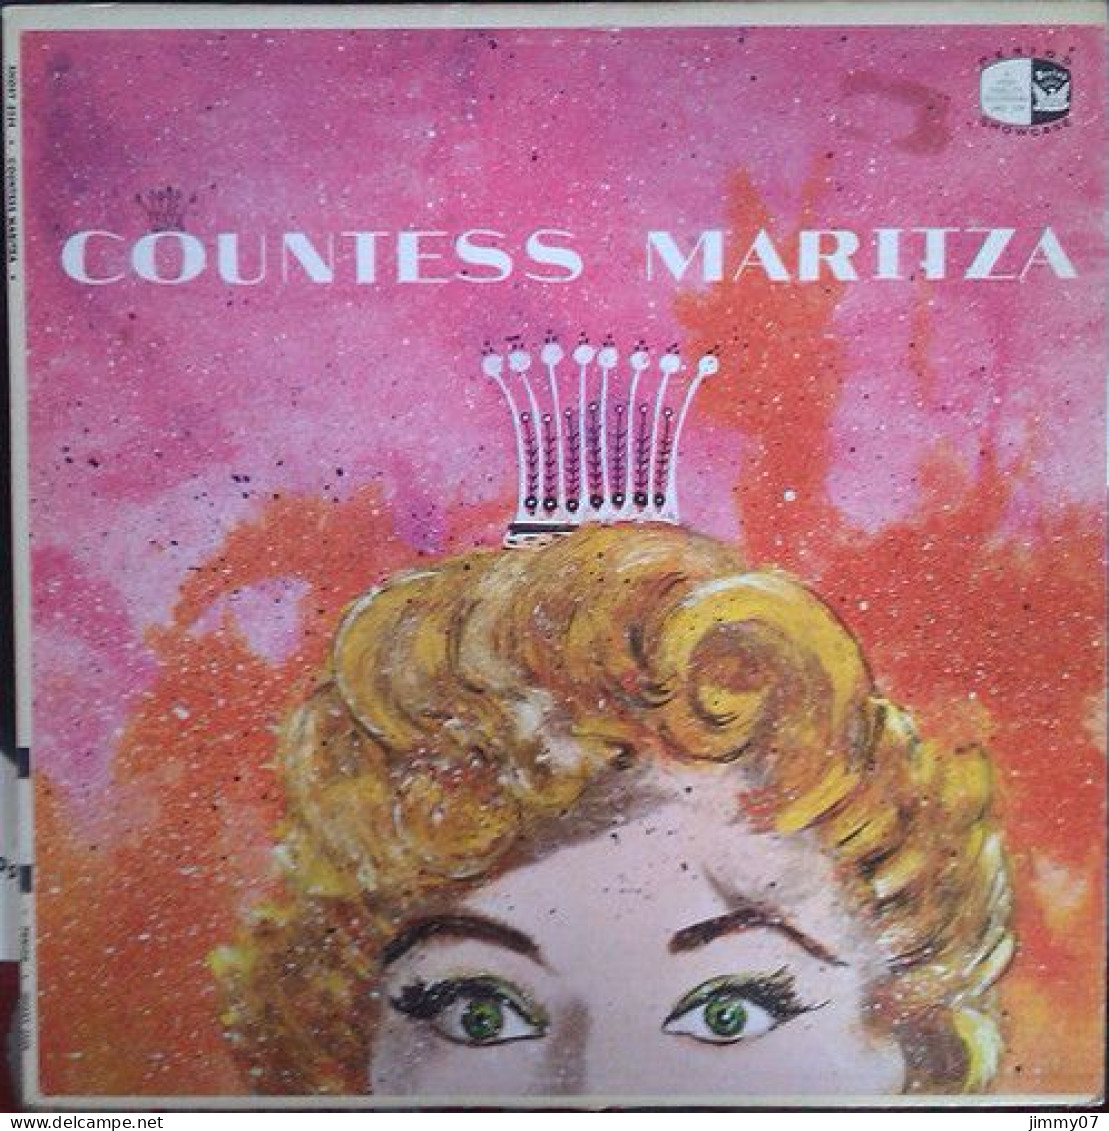 Emmerich Kalman - "Countess Maritza" (LP) - Klassik